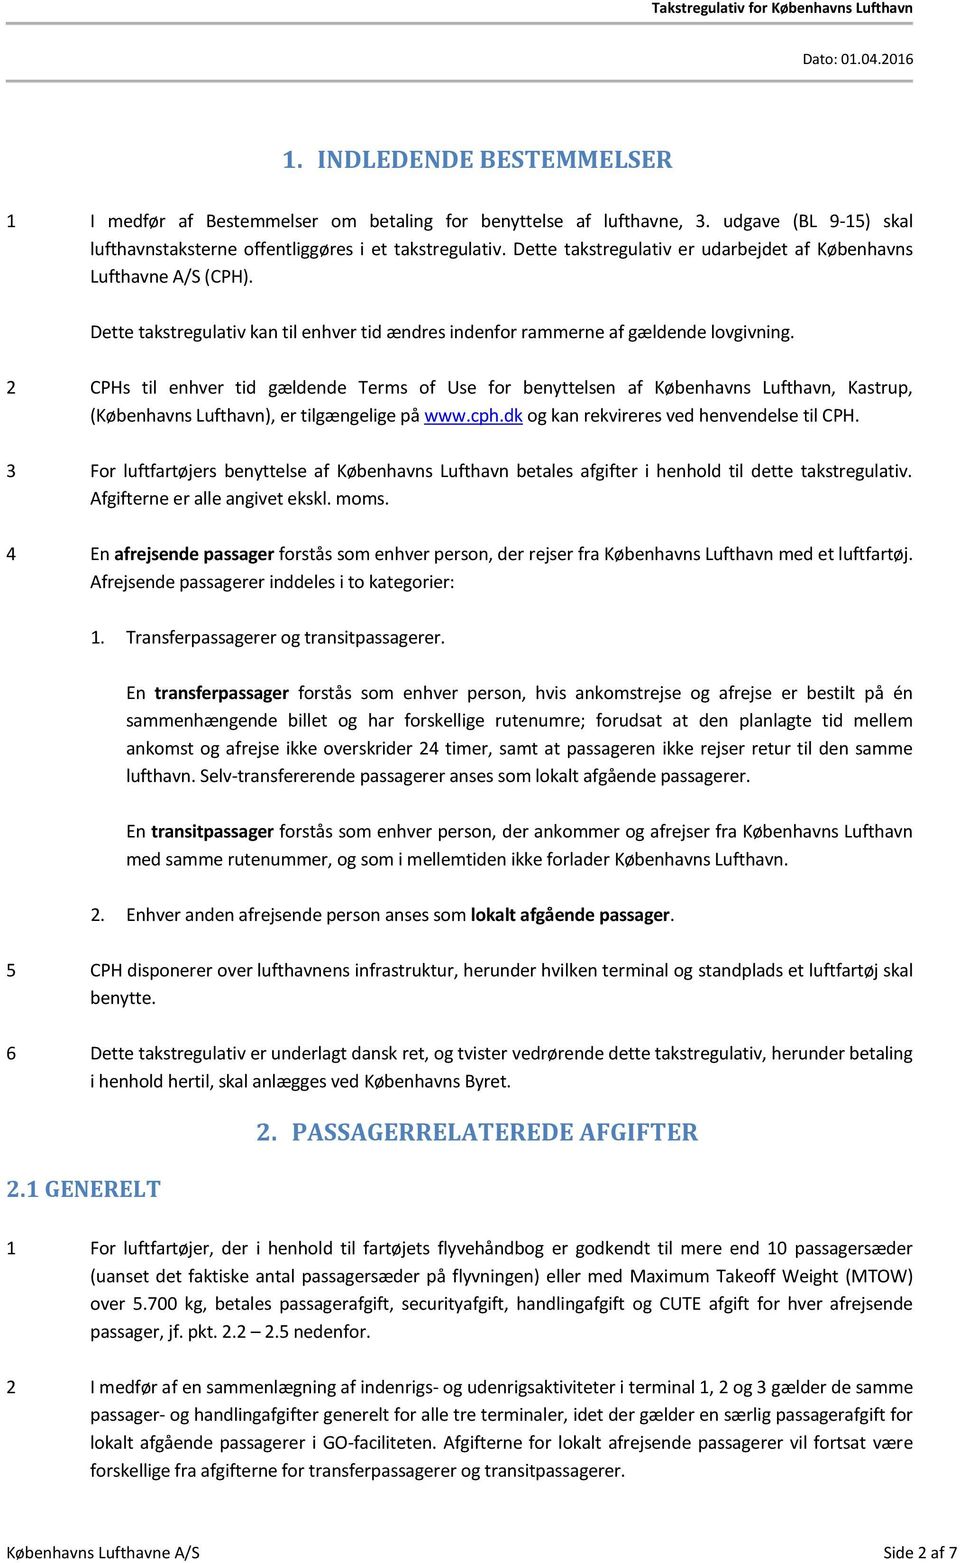 2 CPHs til enhver tid gældende Terms of Use for benyttelsen af Københavns Lufthavn, Kastrup, (Københavns Lufthavn), er tilgængelige på www.cph.dk og kan rekvireres ved henvendelse til CPH.